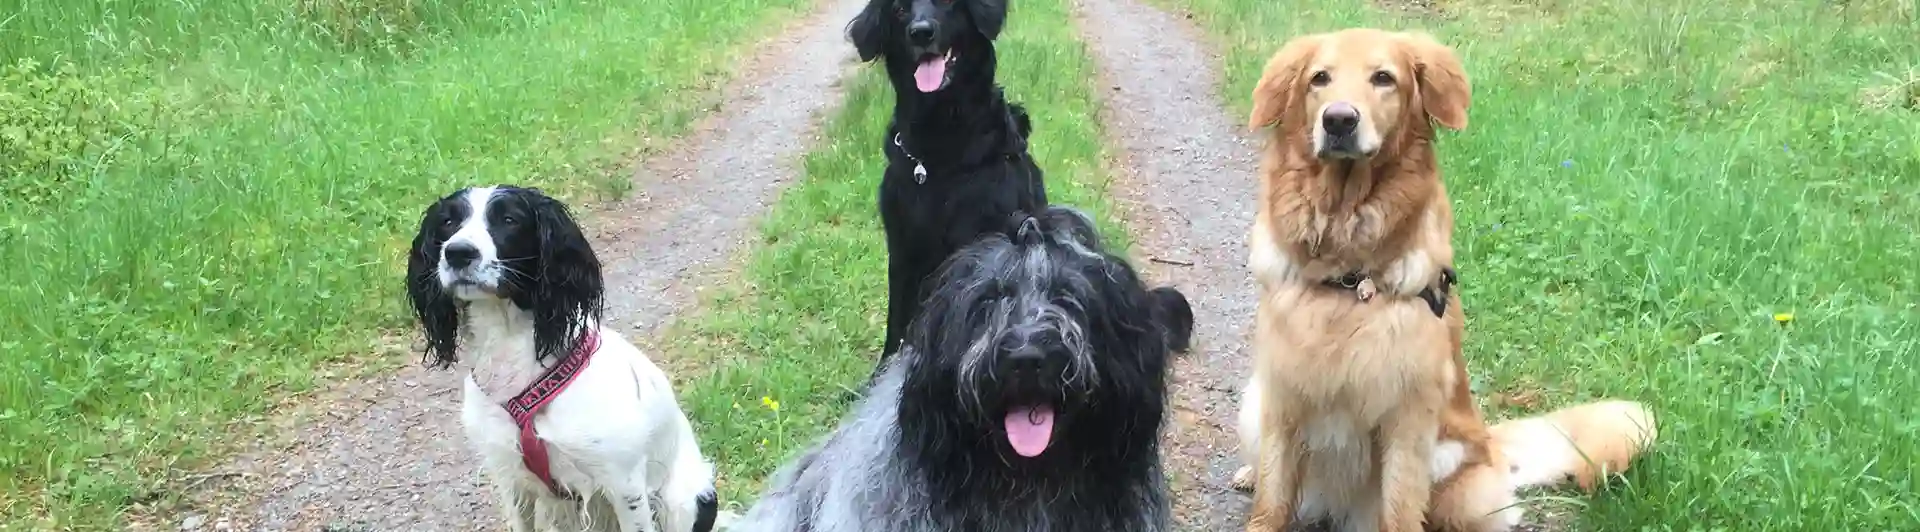 Hundar sitter på skogsväg